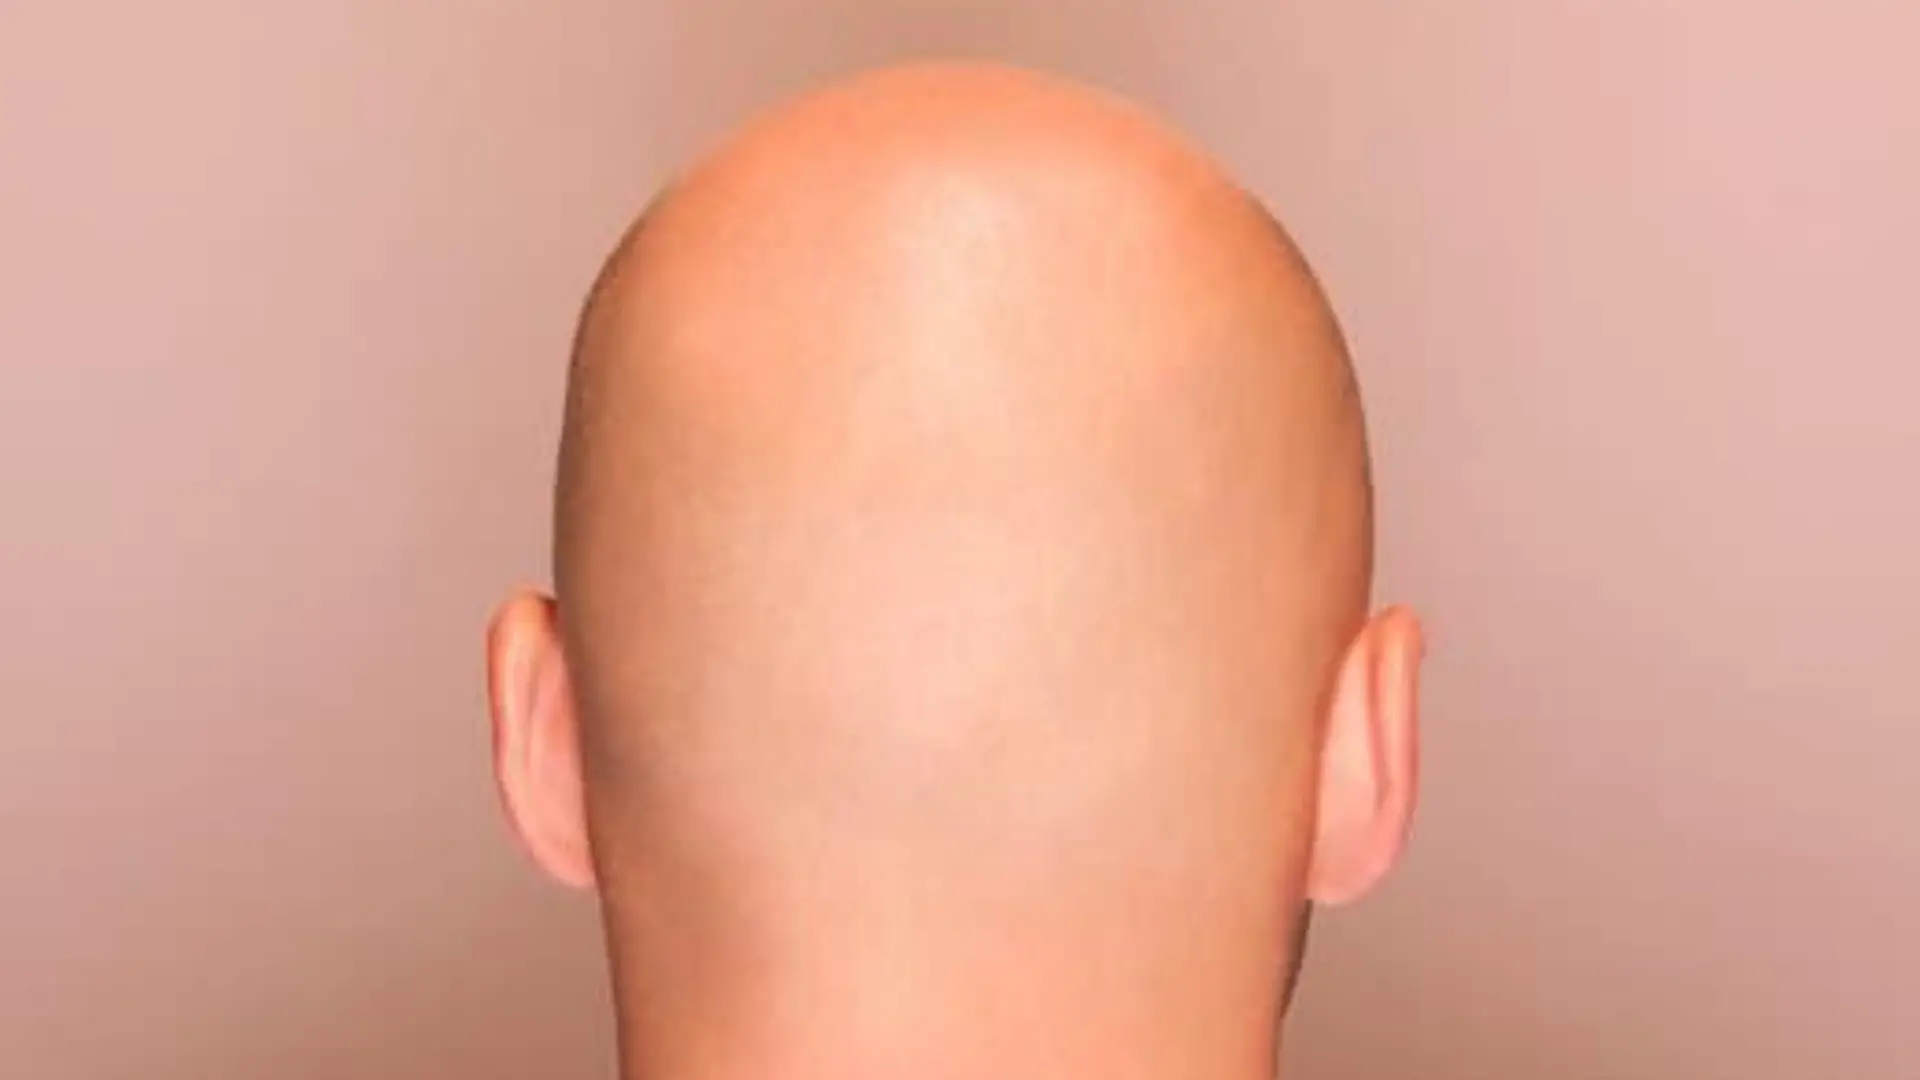 do bald men shines their head